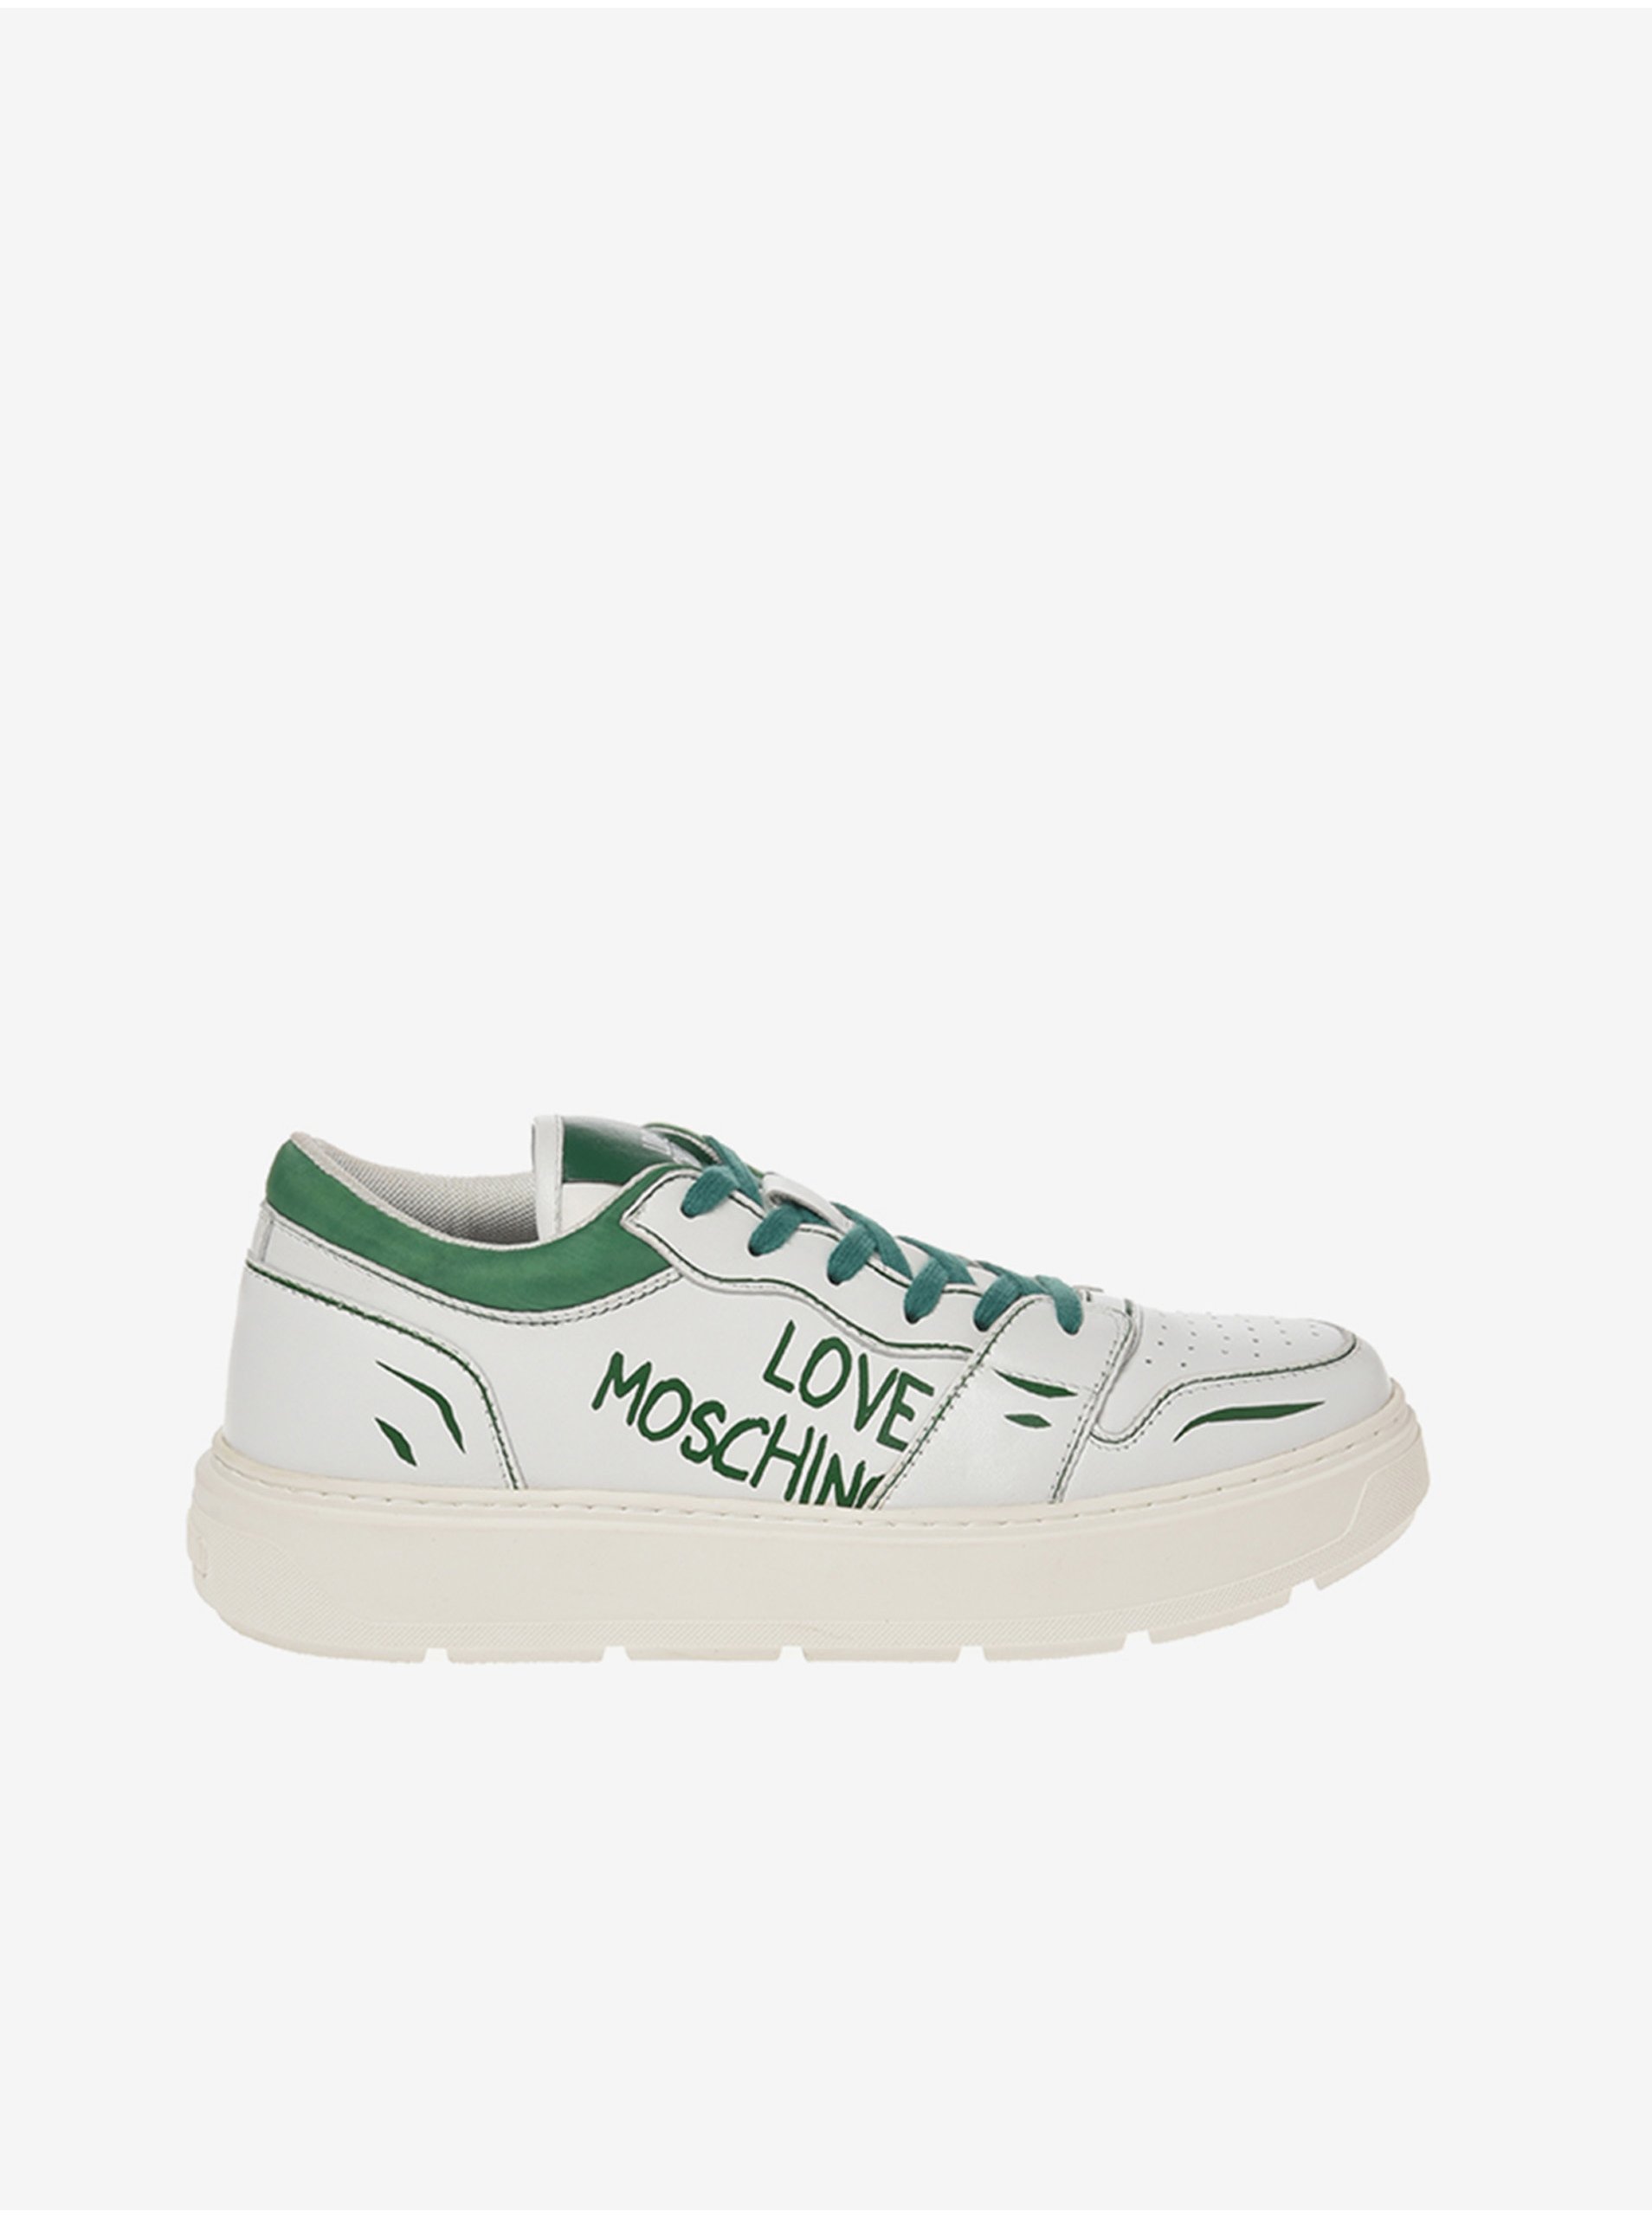 E-shop Zeleno-biele dámske kožené tenisky Love Moschino